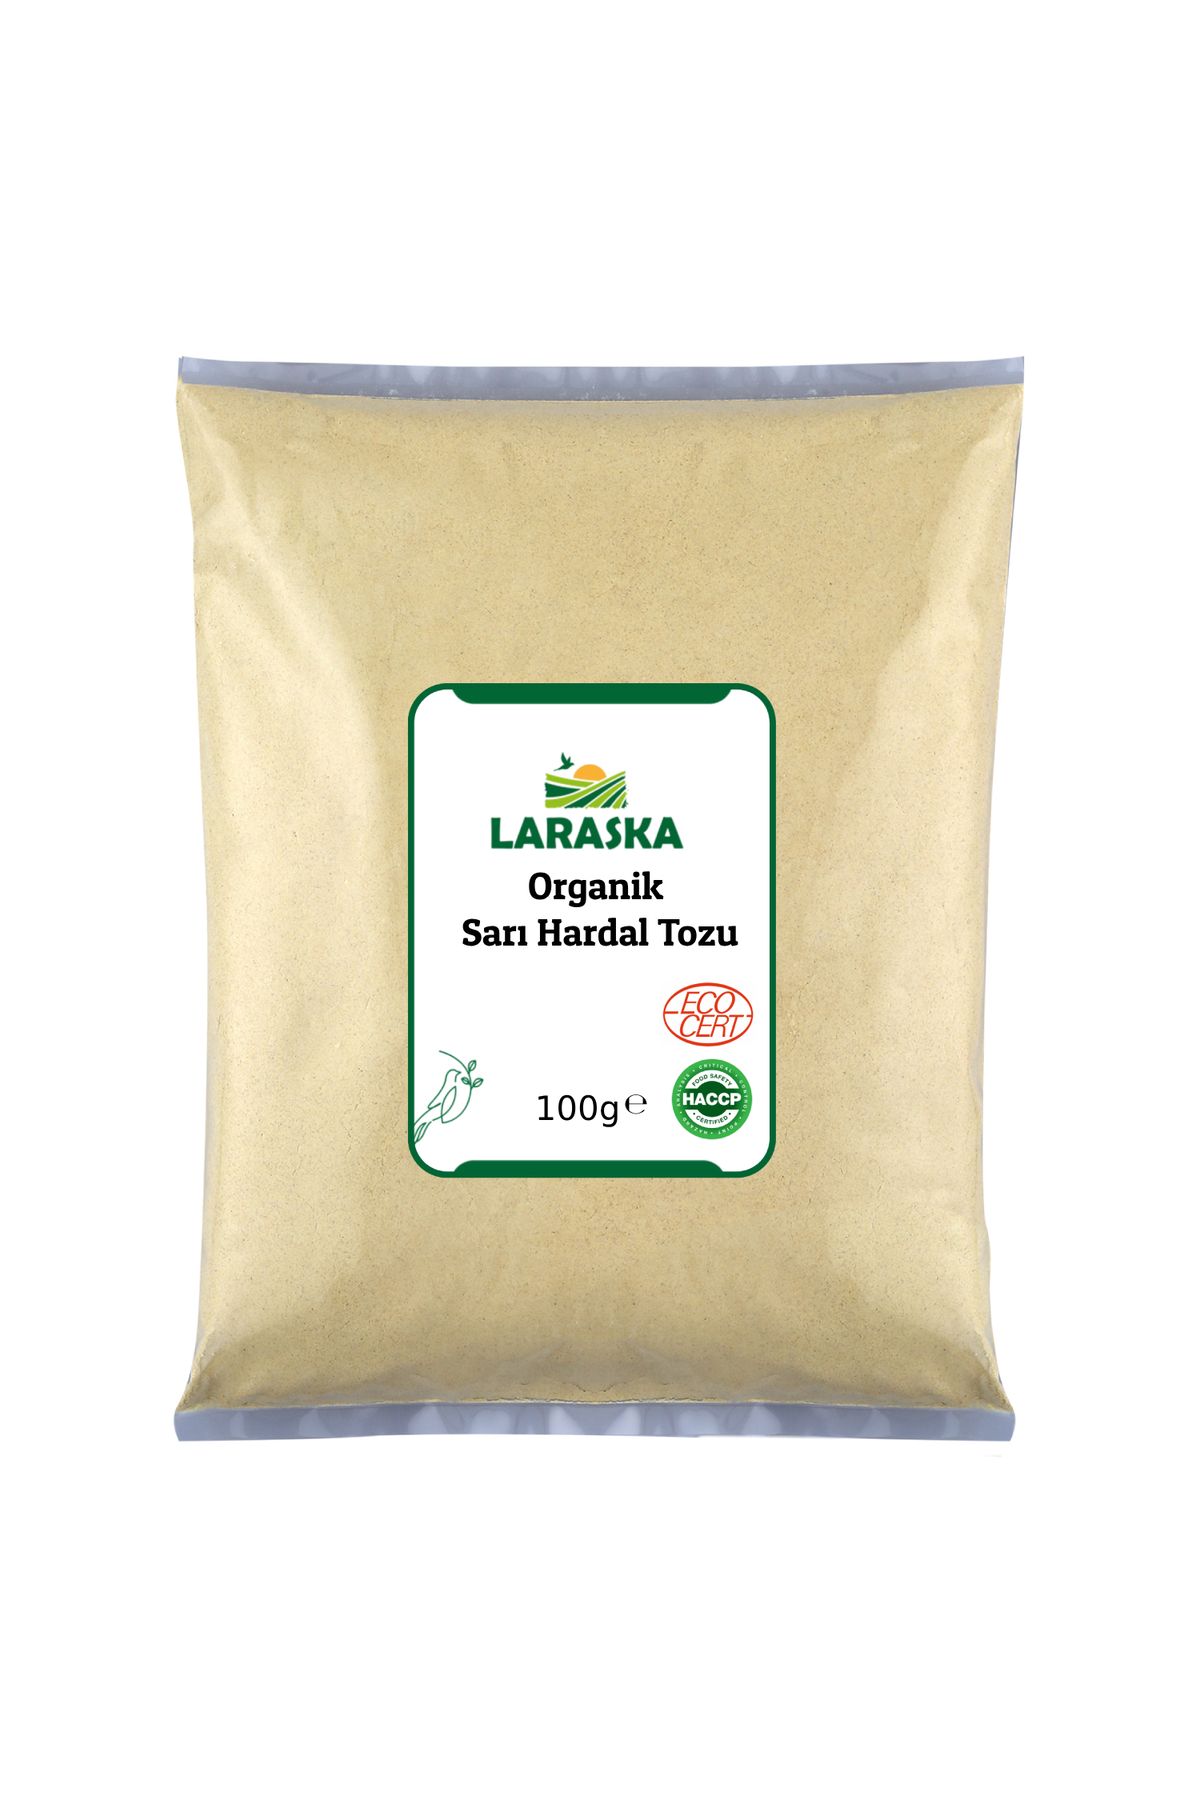 Laraska Organik Organik Sarı Hardal Tozu 100g- Organic Yellow Mustard Powder 100g